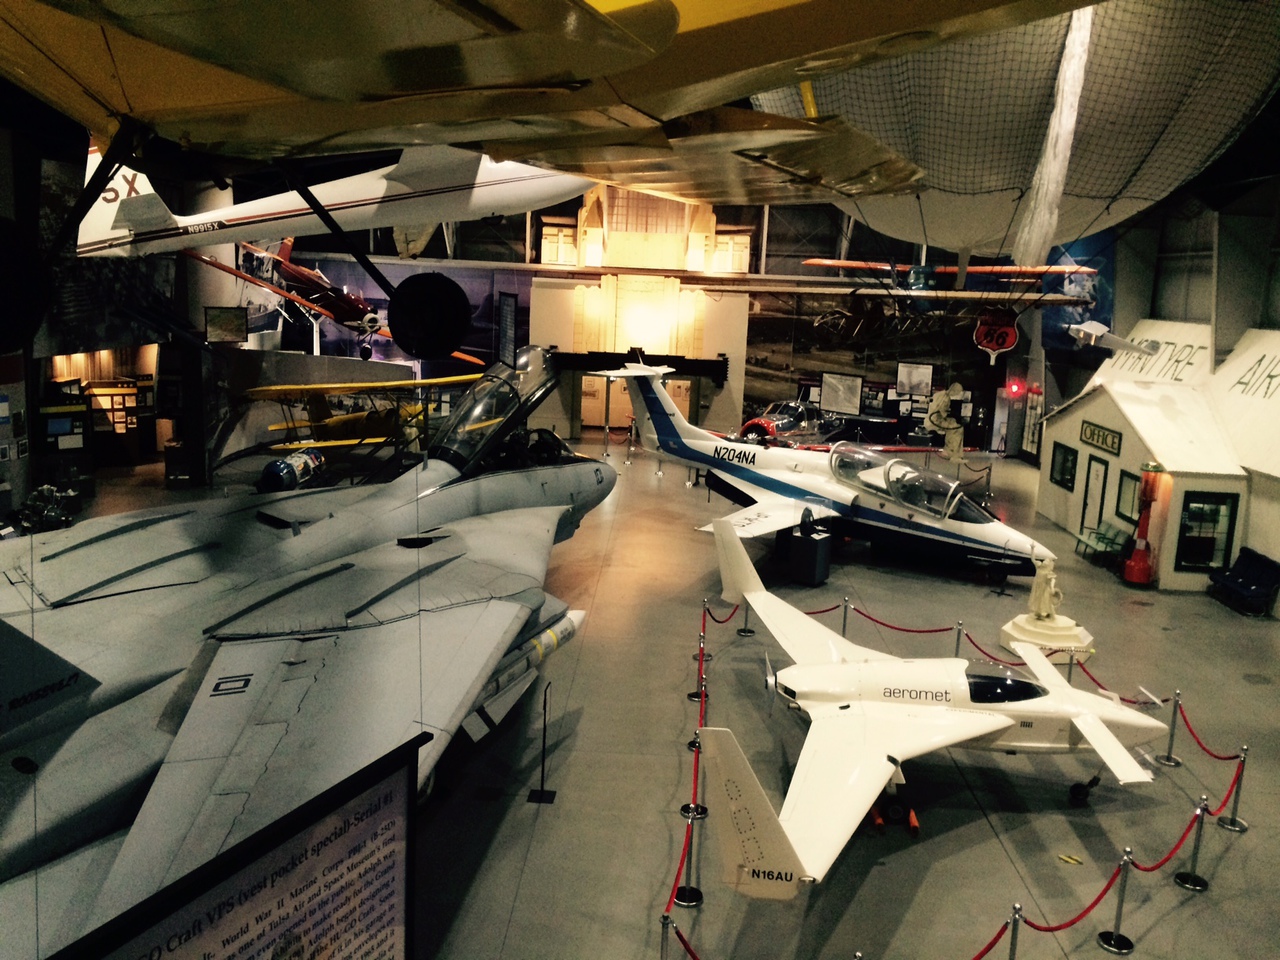 Star Wars Day at TASM Sat May 6th - Tulsa Air and Space Museum